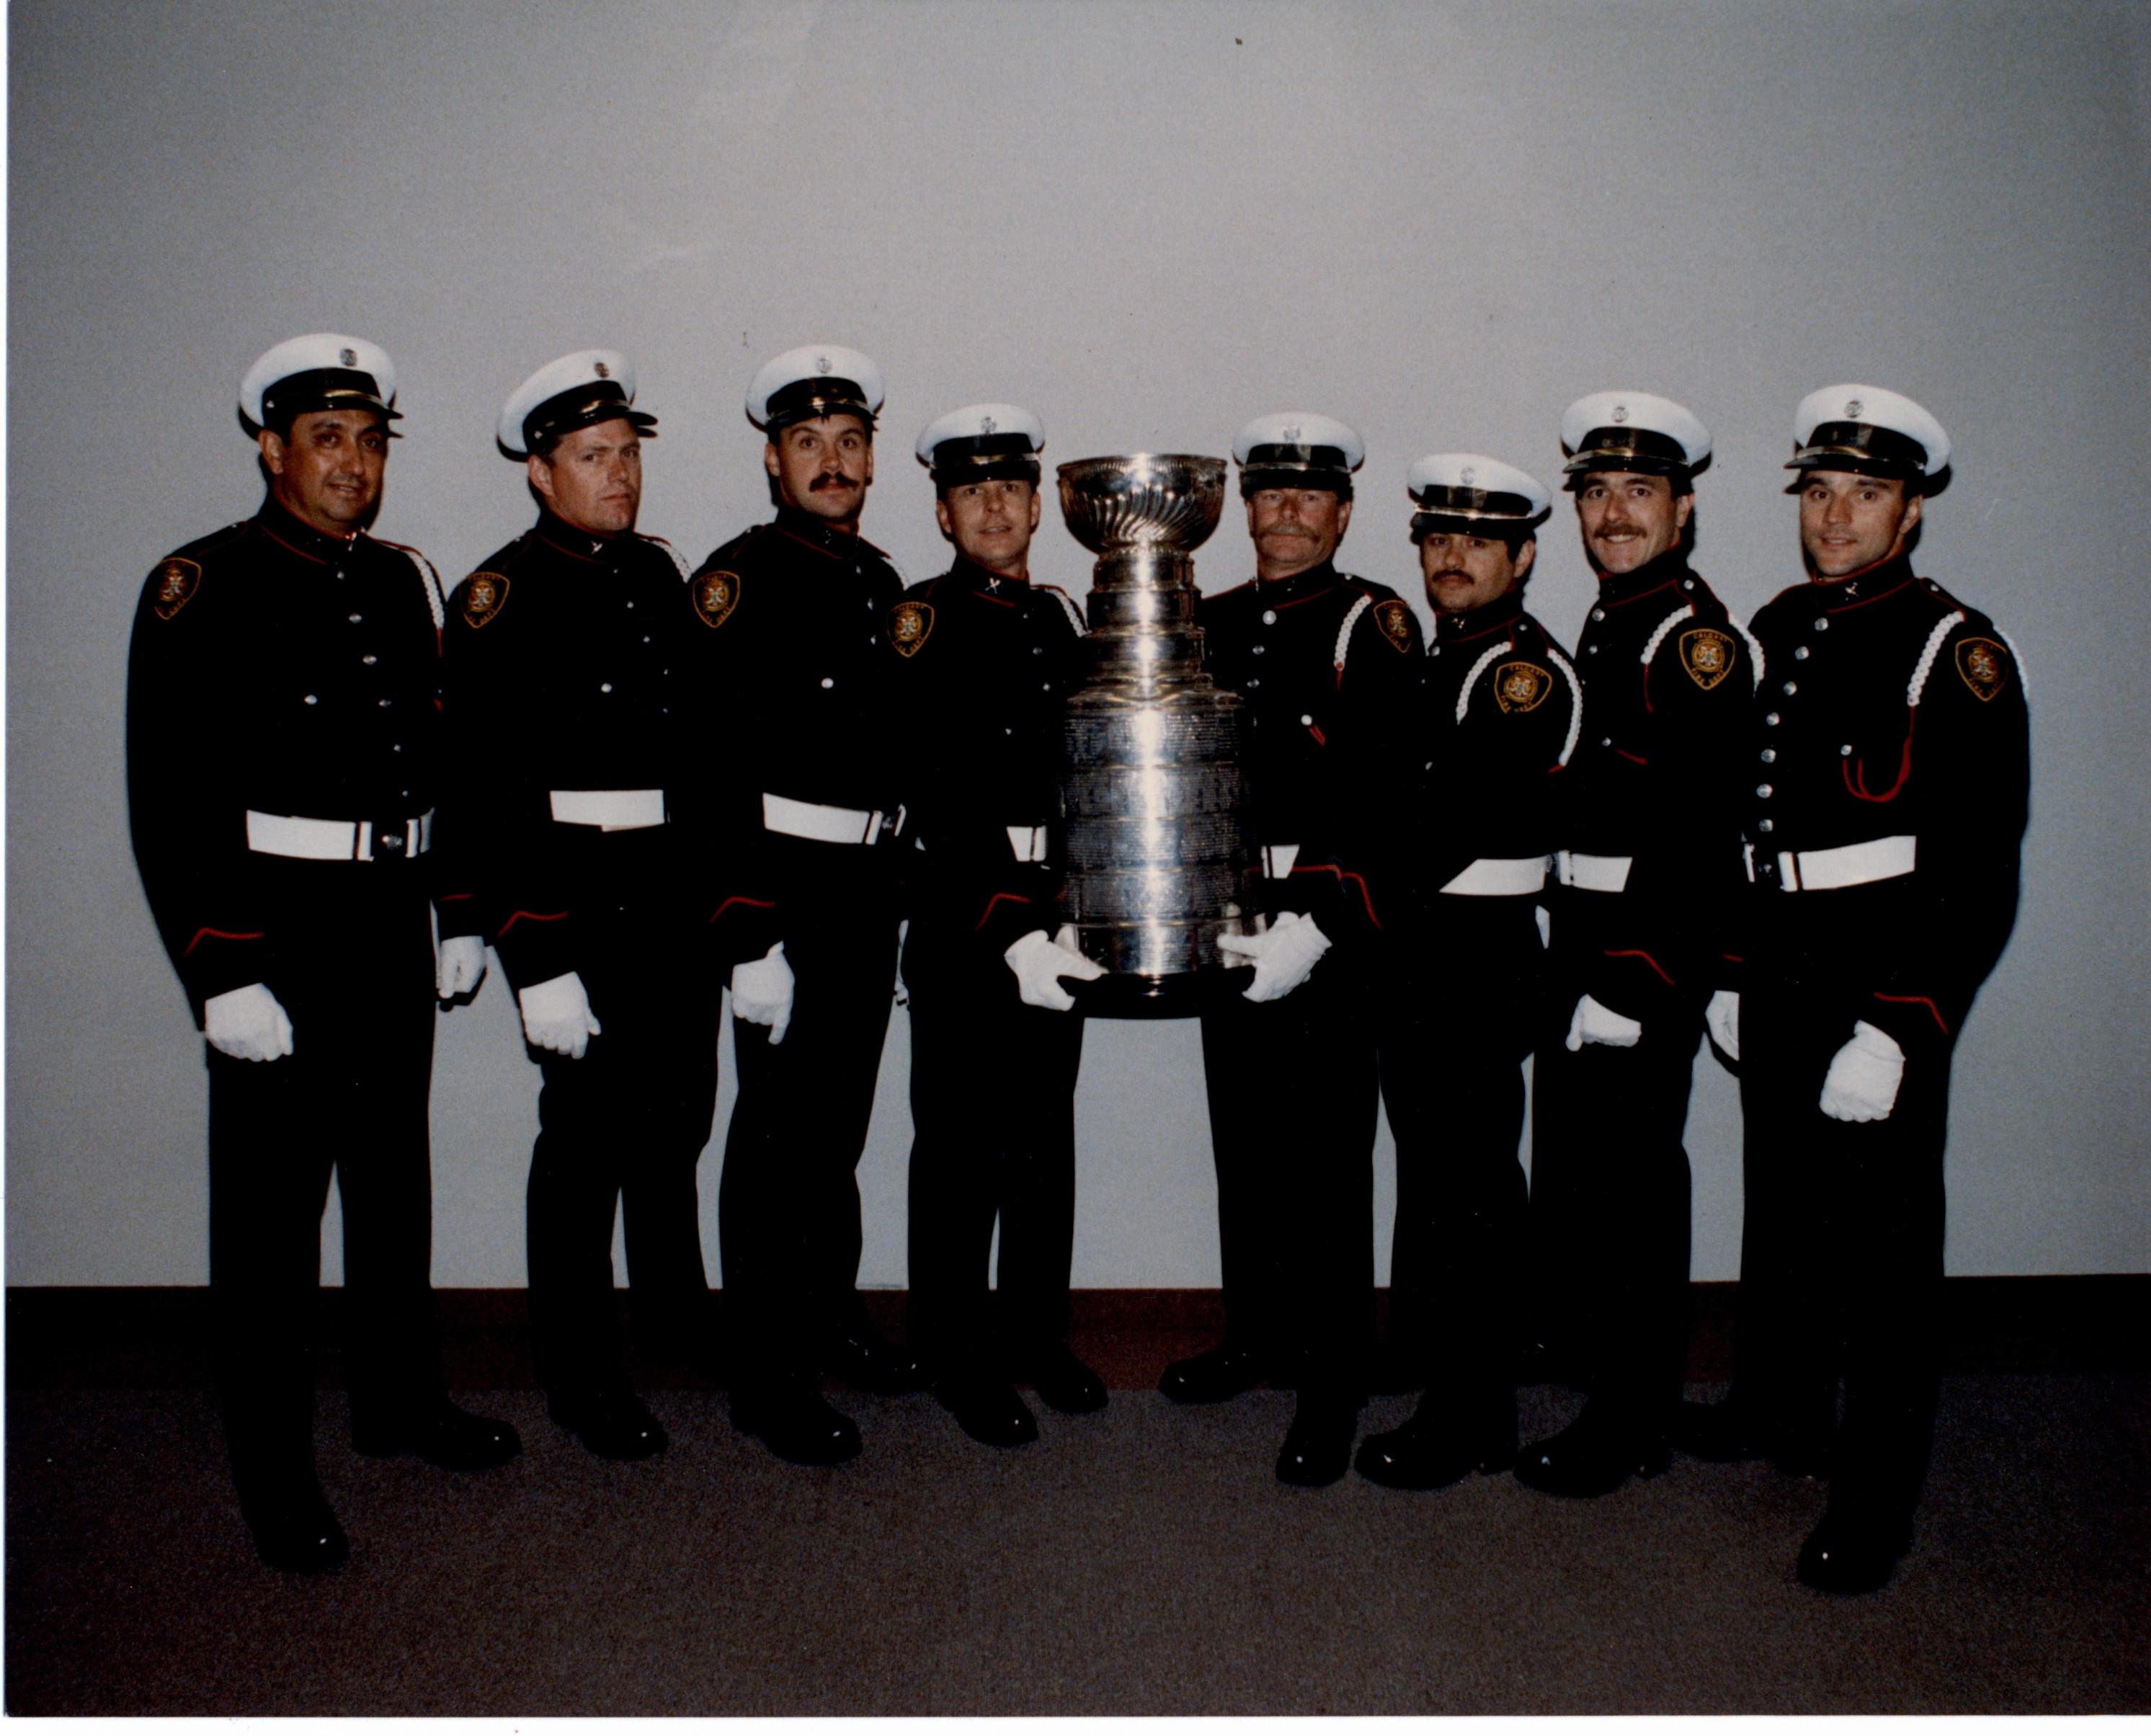 Huit pompiers en uniforme, de part et d’autre de la Coupe Stanley, au centre